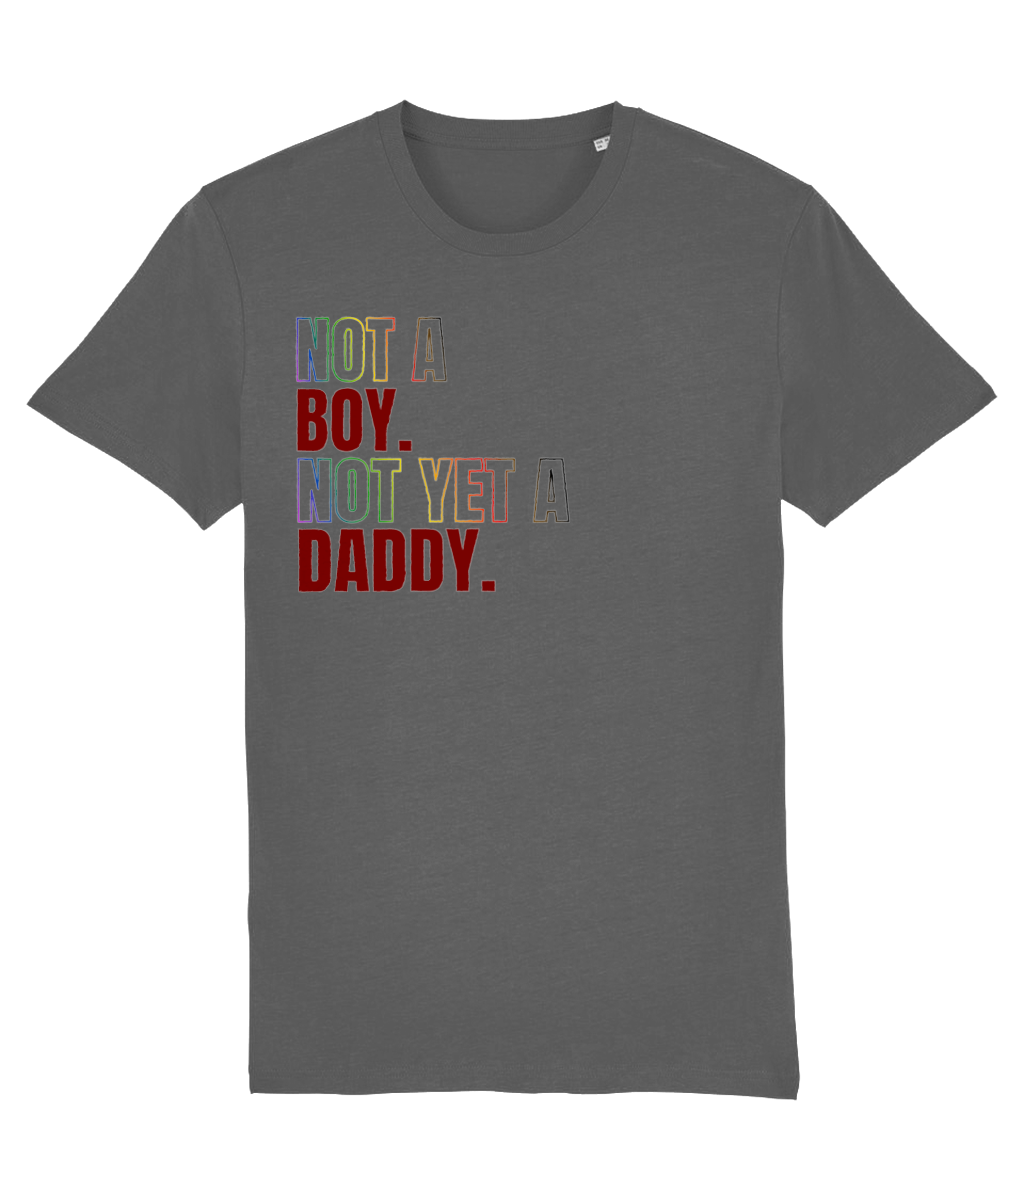 Not a Boy Organic Cotton T-shirt